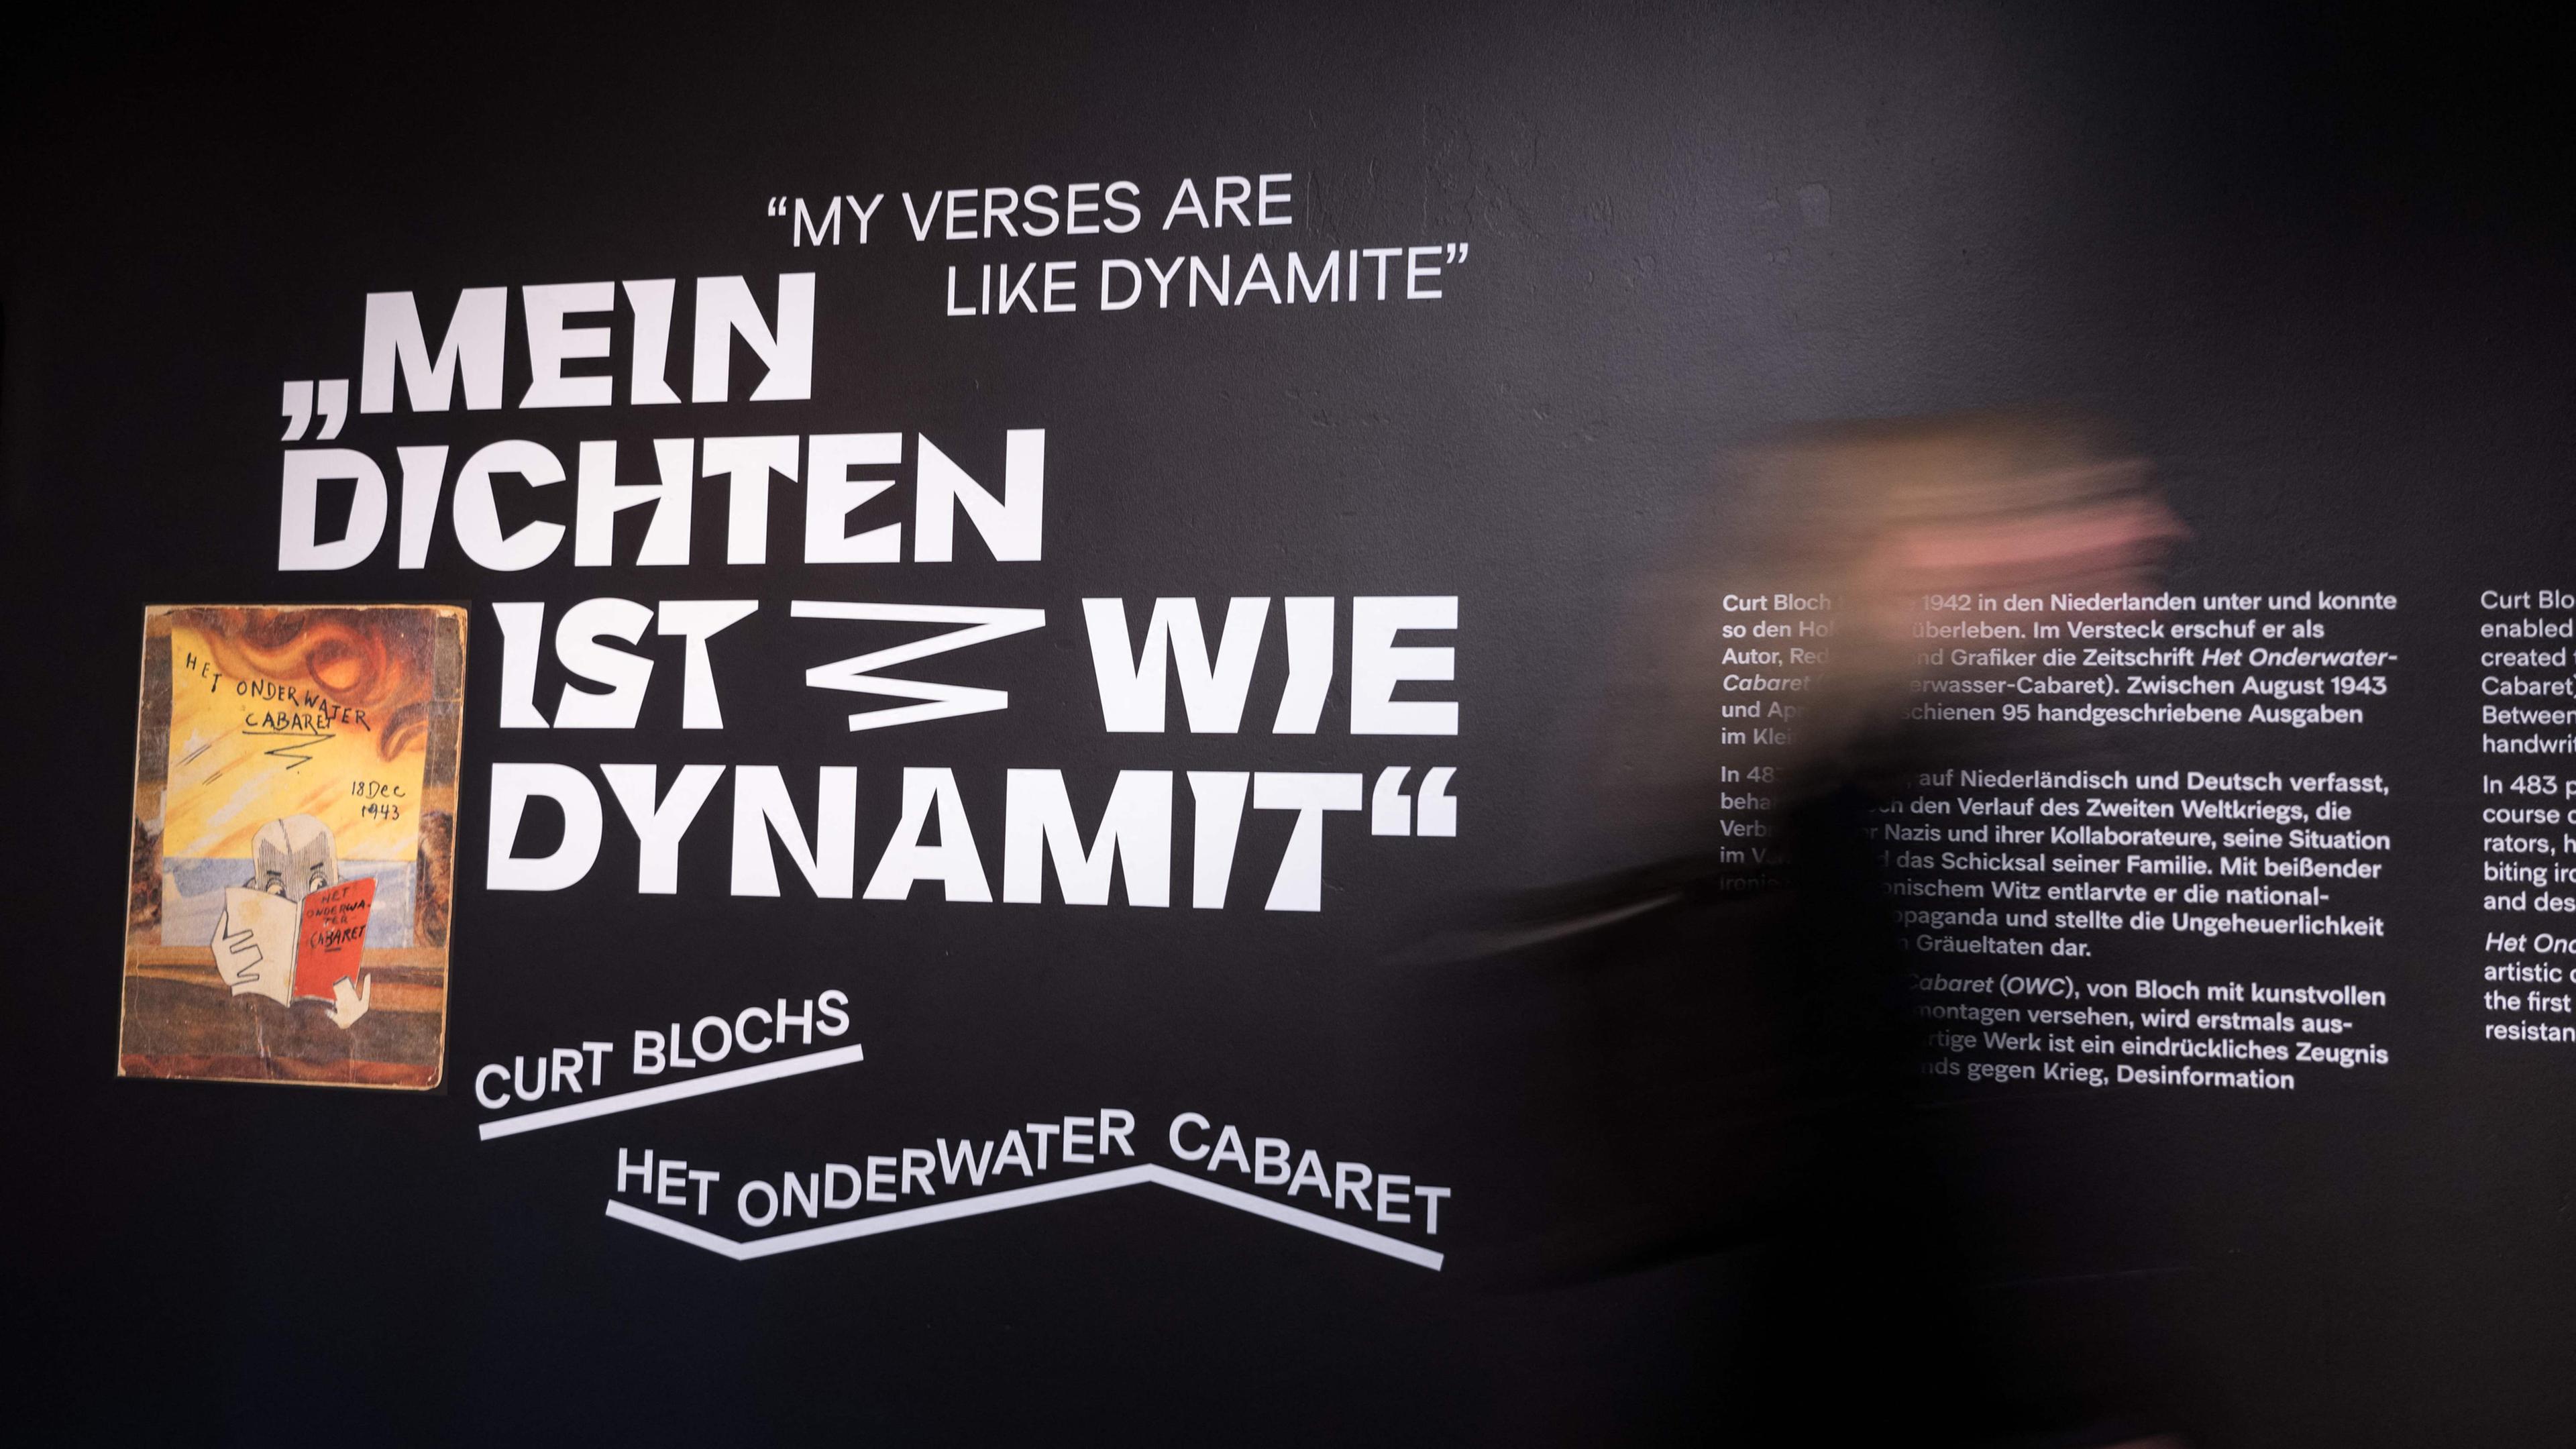 Besucher gehen an einer Wand mit dem Schriftzug "Meine Schrift ist wie Dynamit" vorbei.